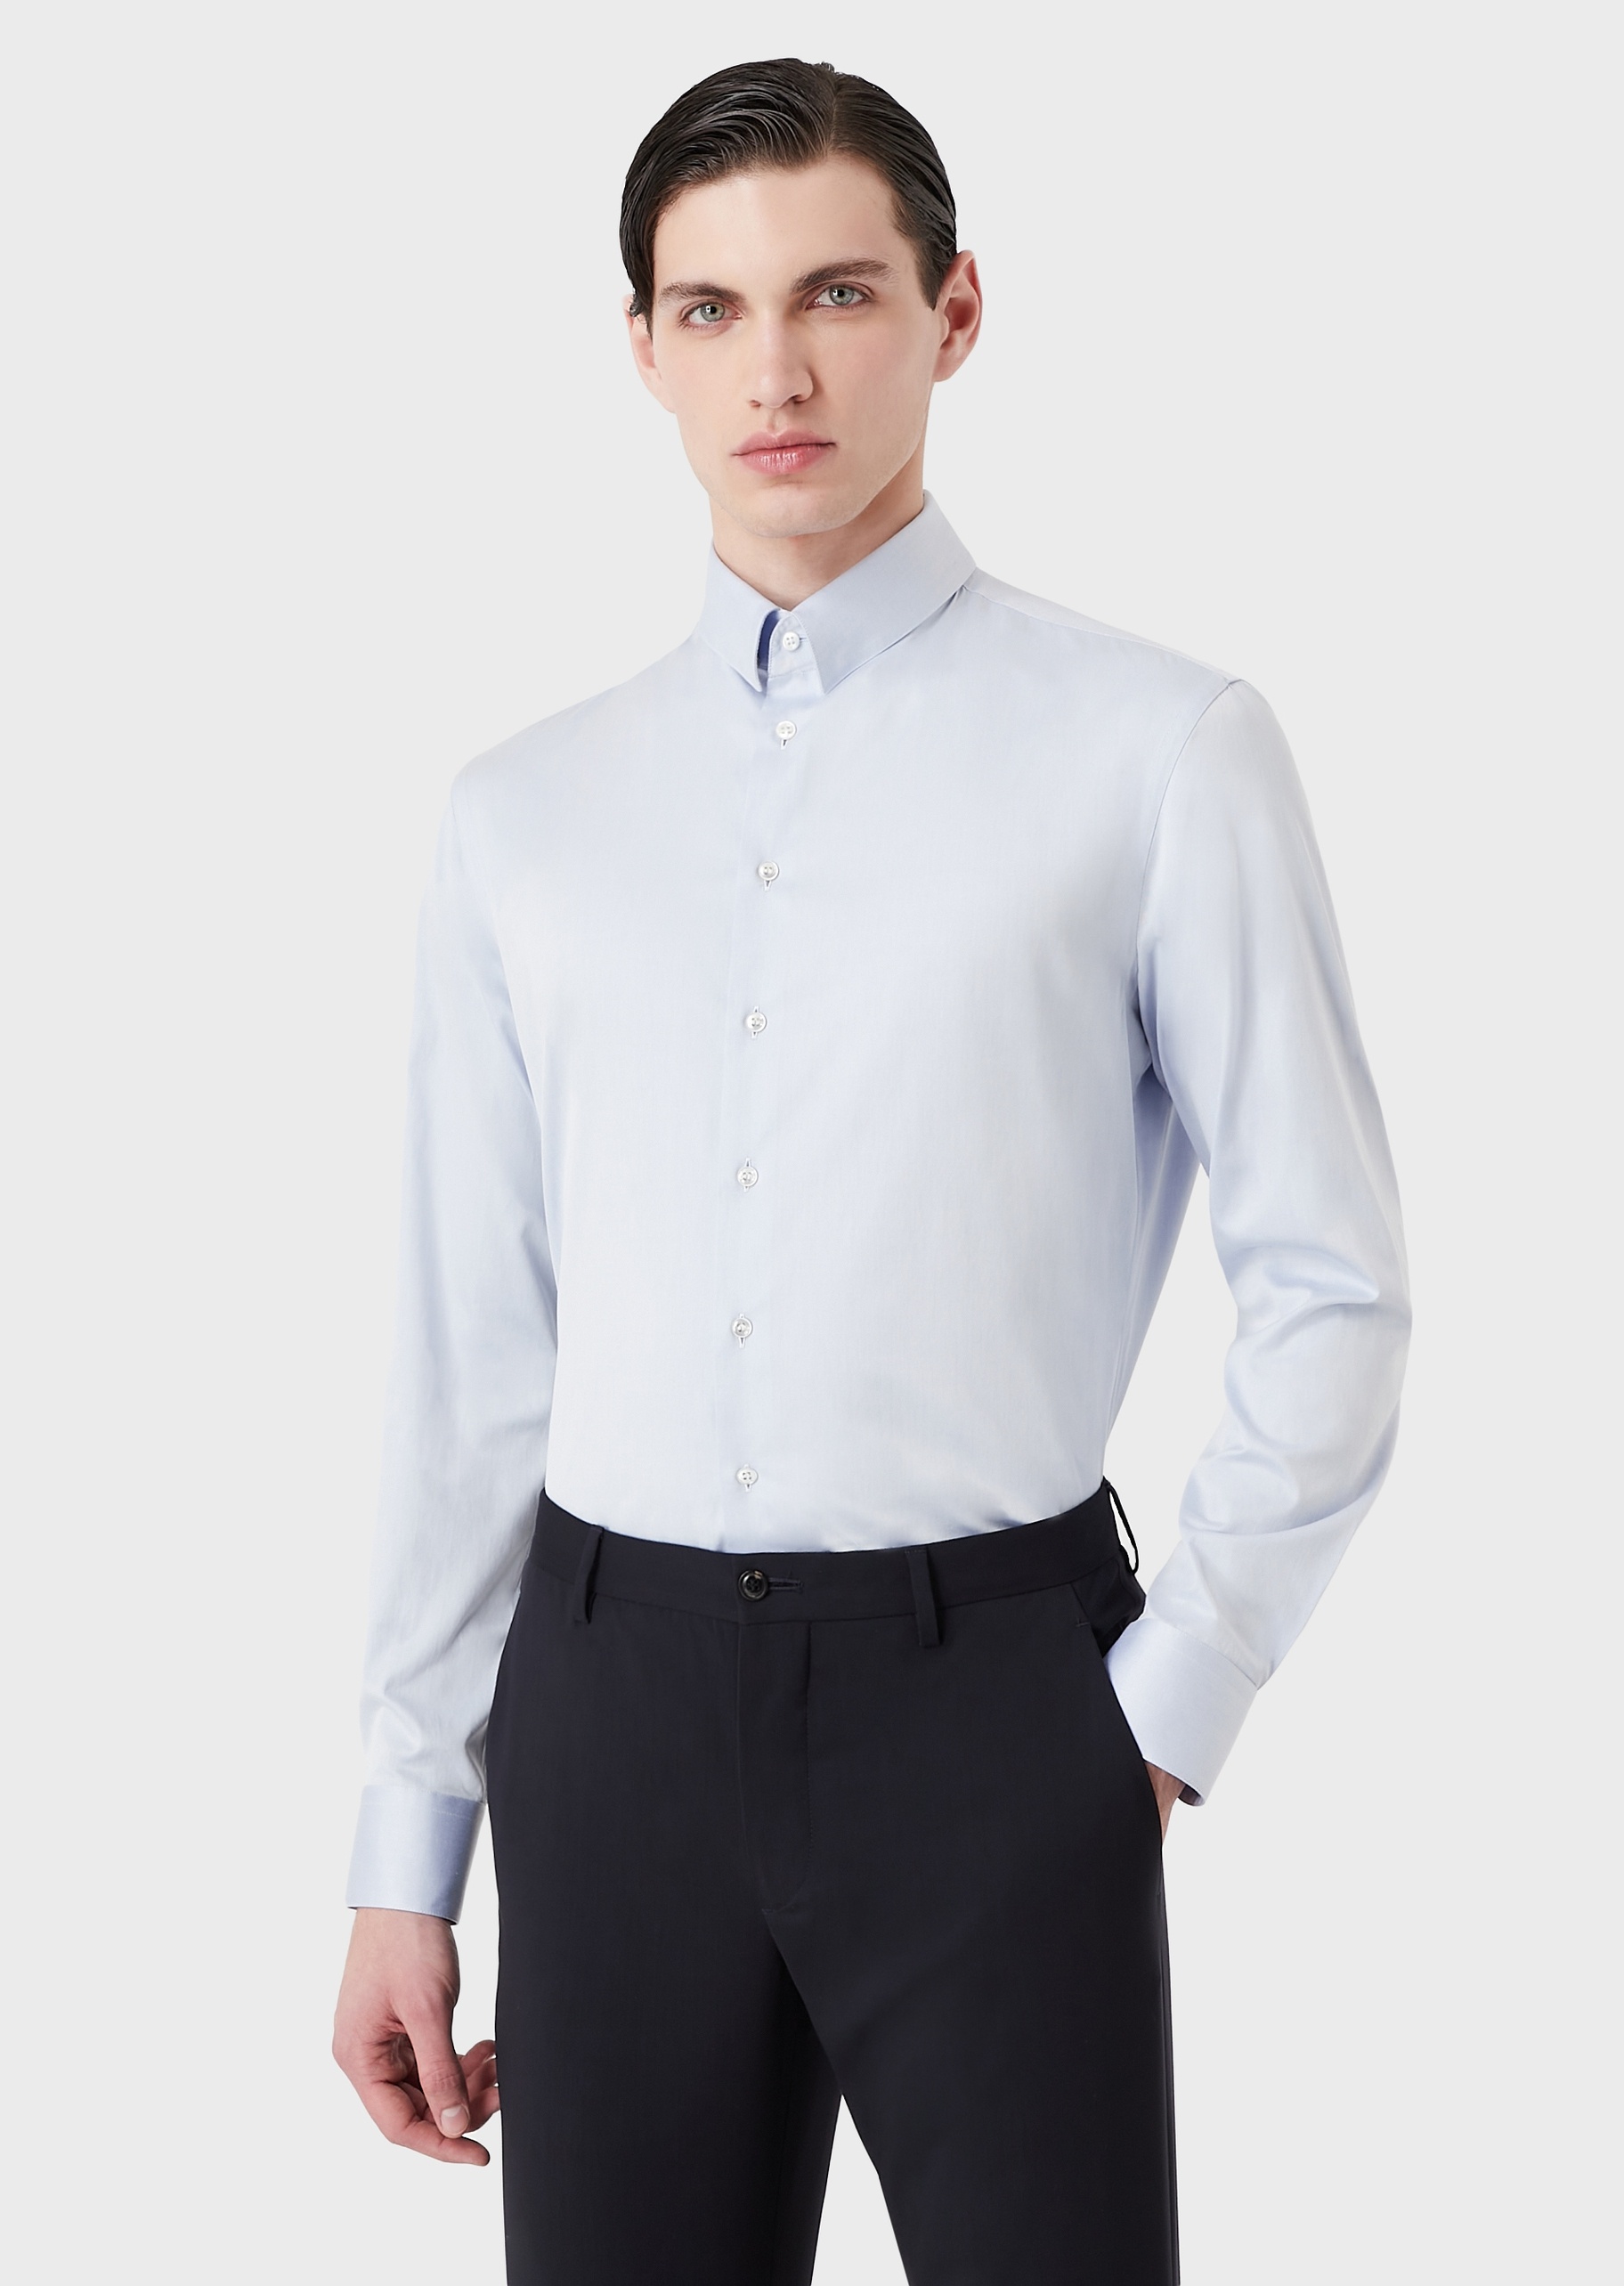 Giorgio Armani 男士全棉修身长袖翻领休闲商务衬衫